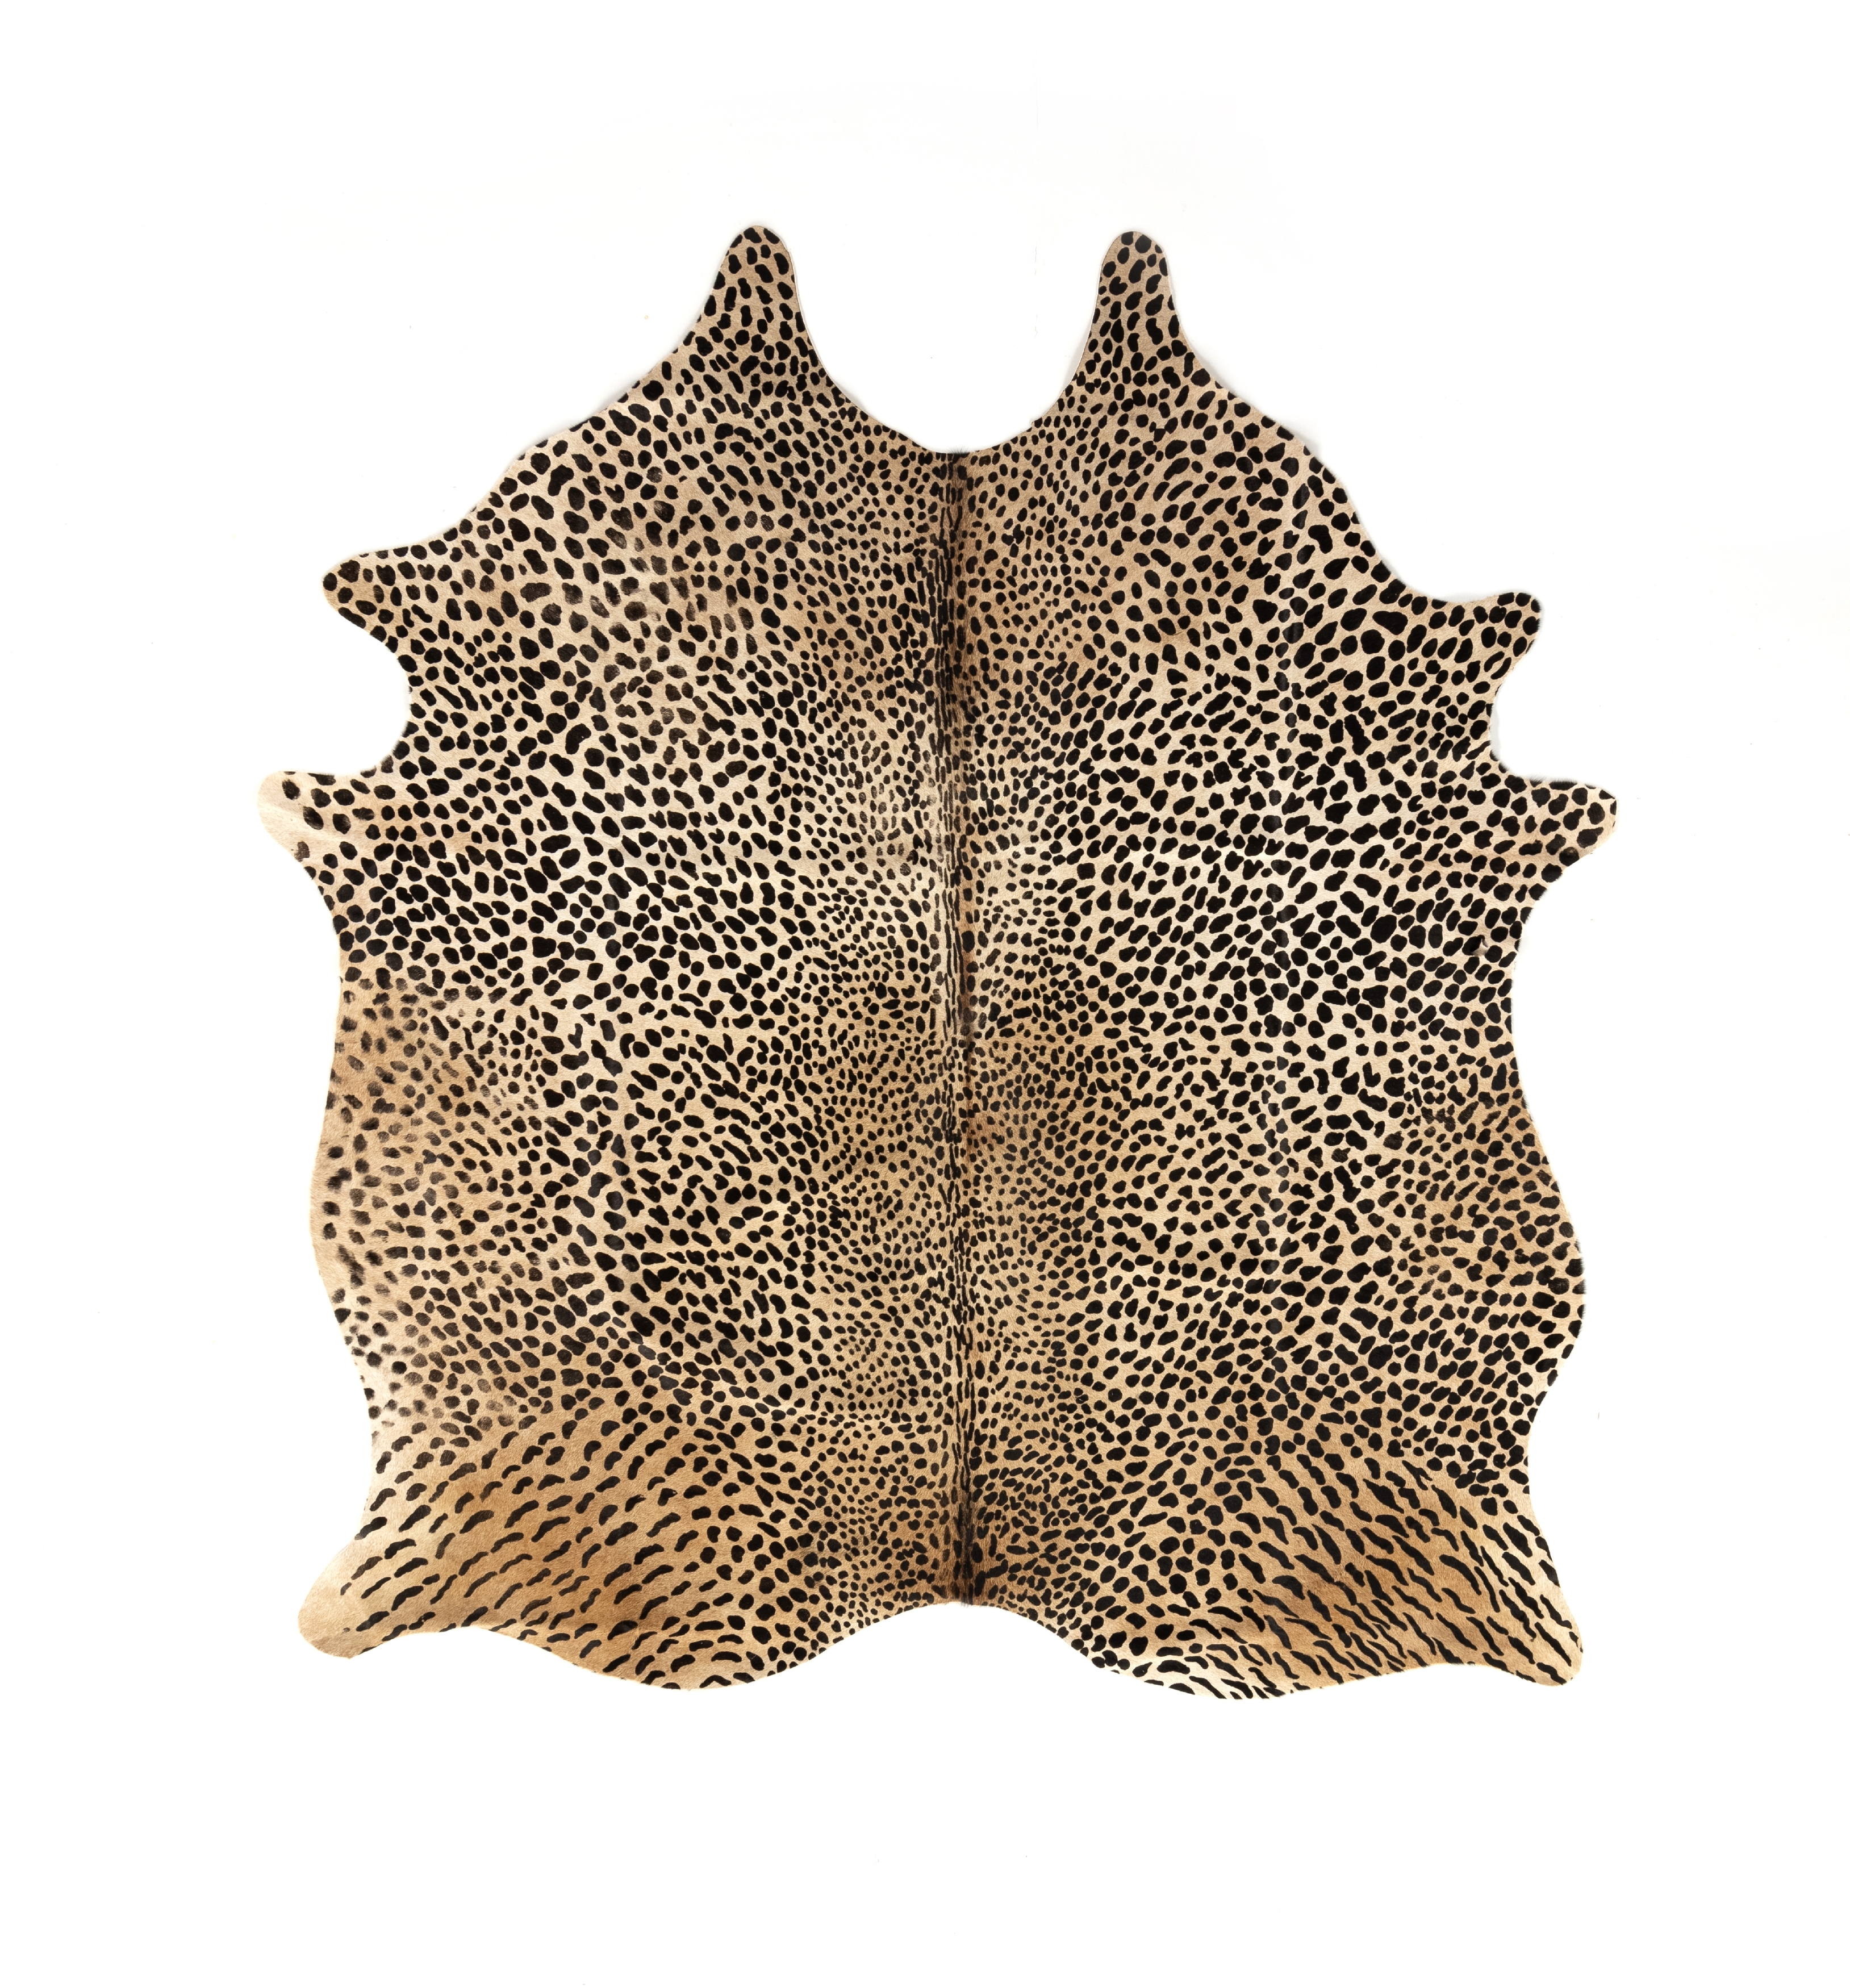 Leopard Printed Hide Rug-Brown & Black - Image 0